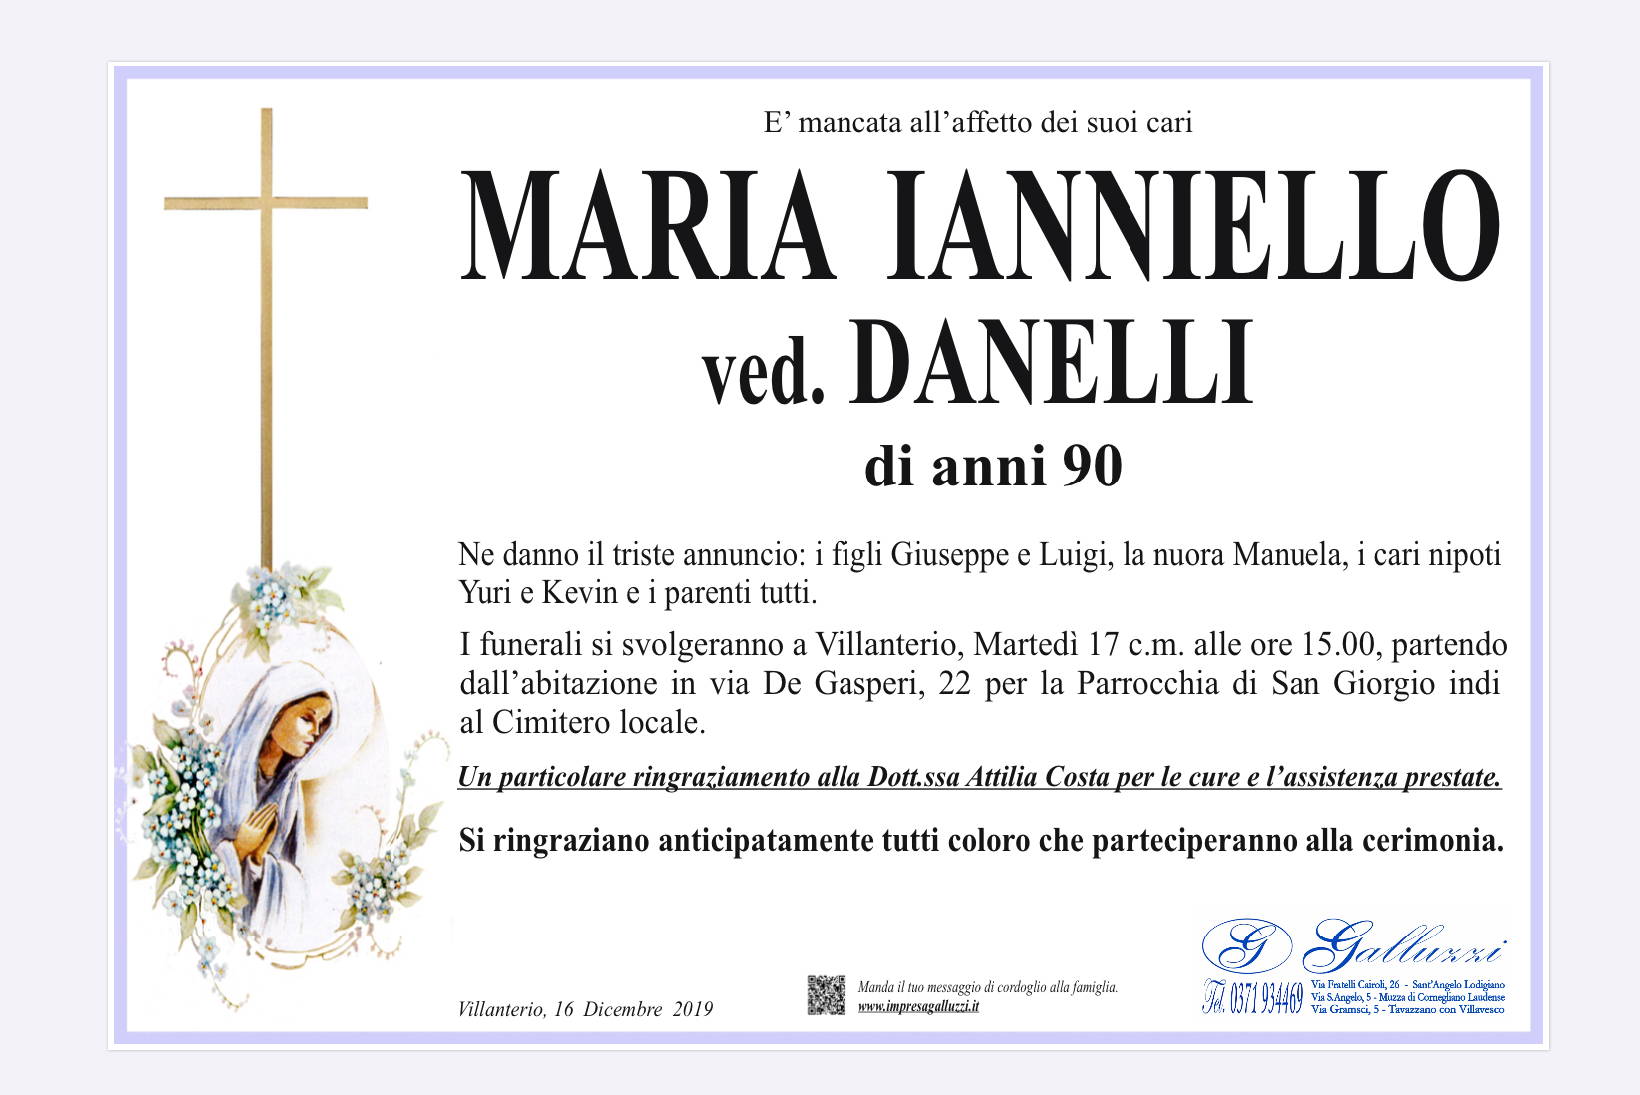 Maria Ianniello